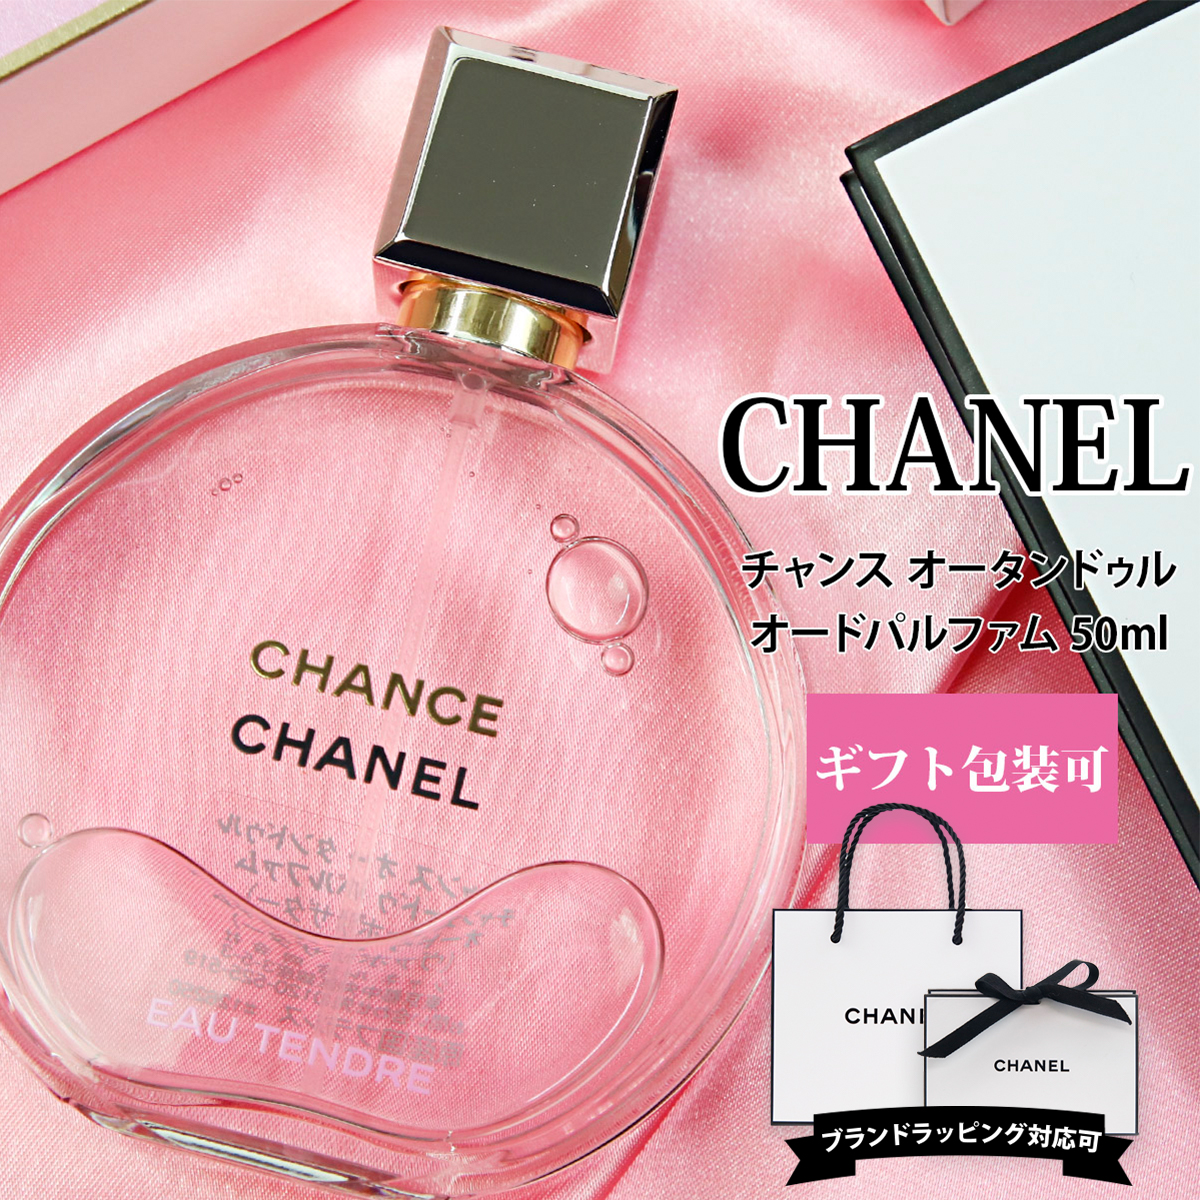 【楽天市場】シャネル 香水 チャンス オー タンドゥル EDP オードパルファム 50ml 化粧品 フレグランス レディース CHANEL